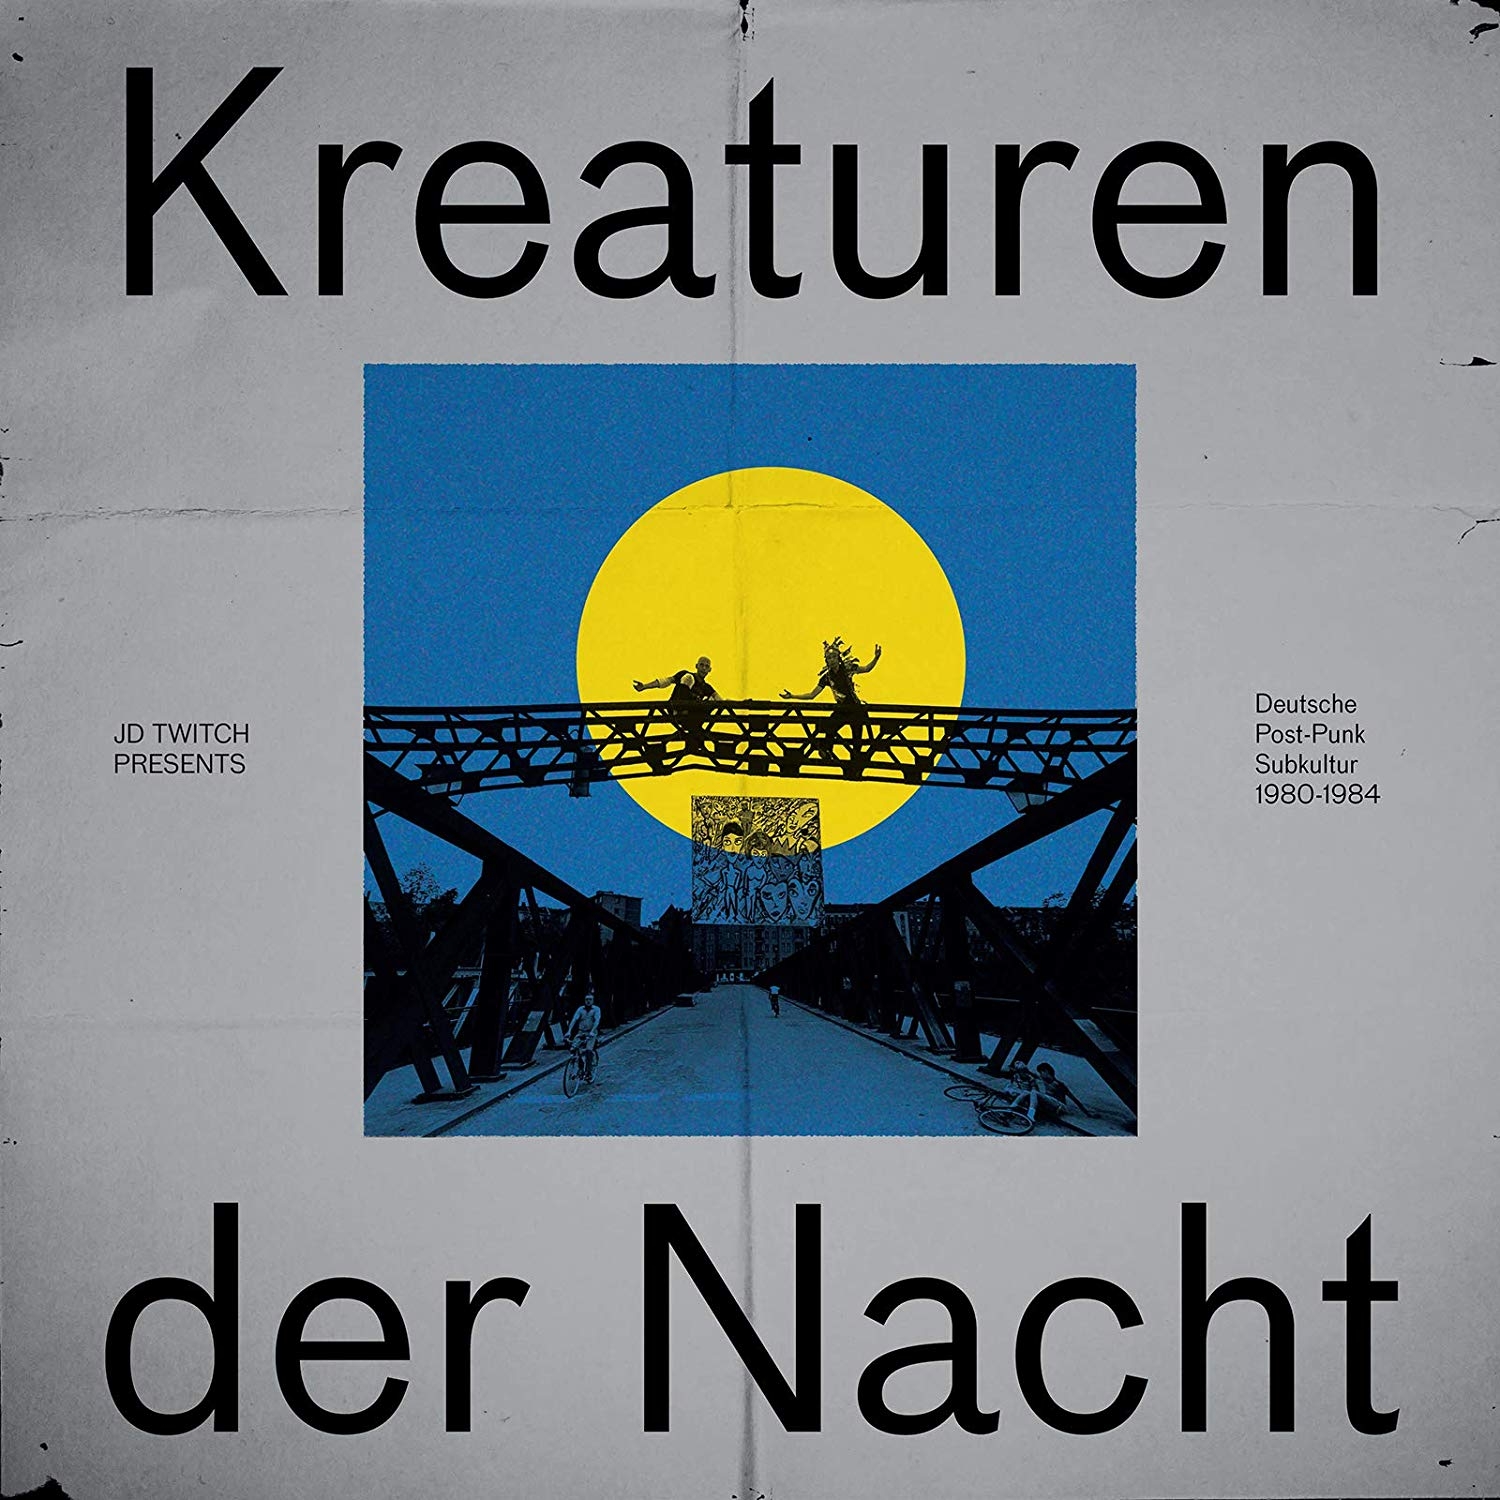 catalog 10 18 Kreaturen d Nacht Strut 02 11